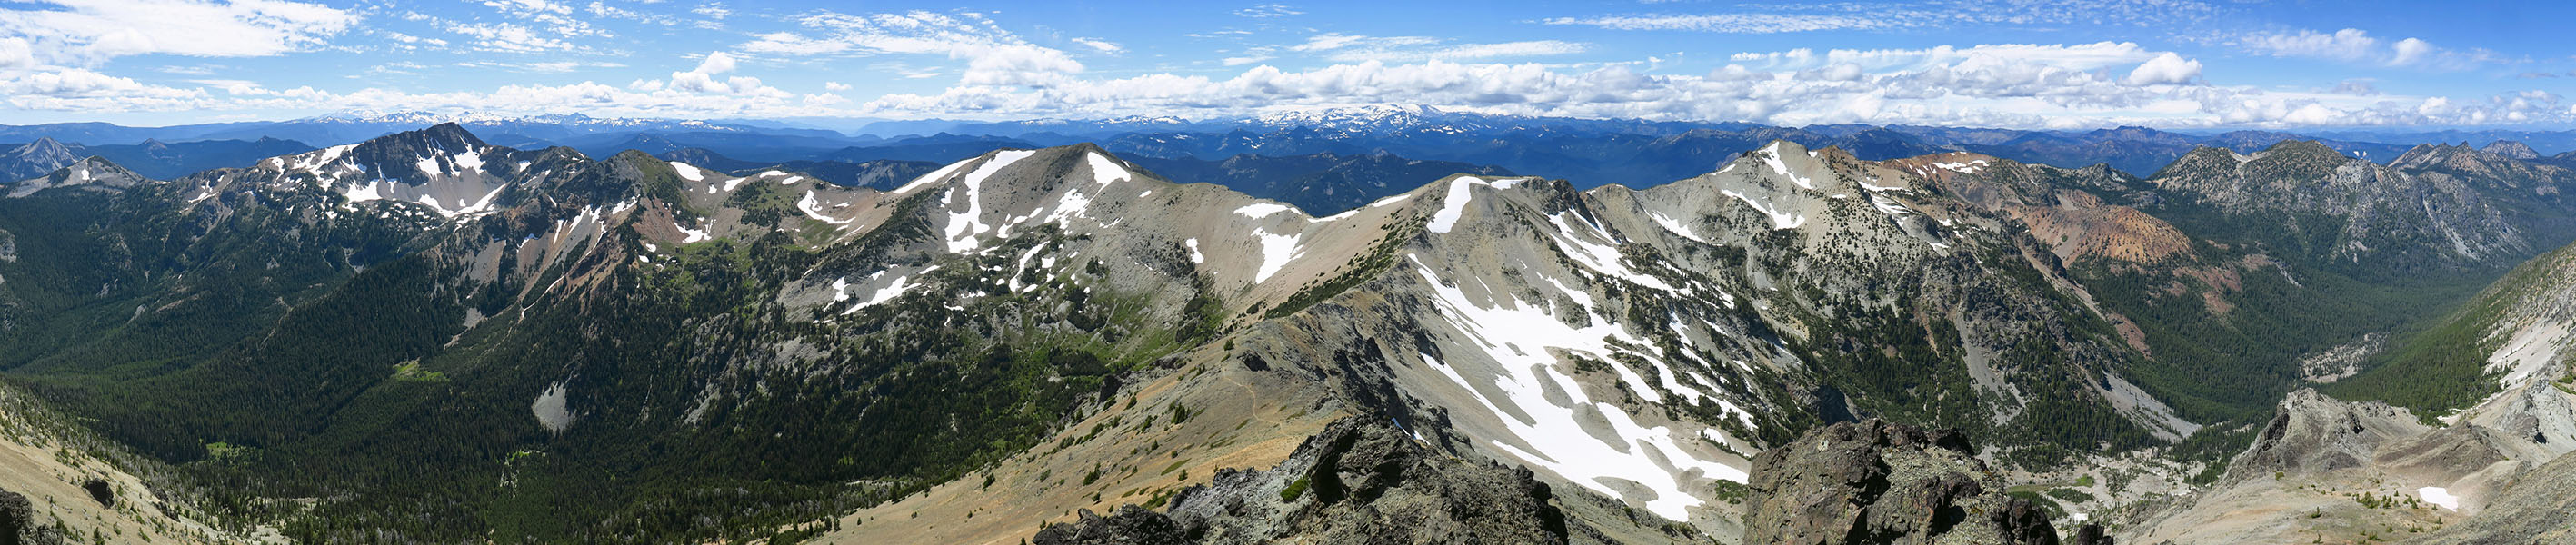 Mt. Aix summit panorama [Mt. Aix summit, William O. Douglas Wilderness, Yakima County, Washington]